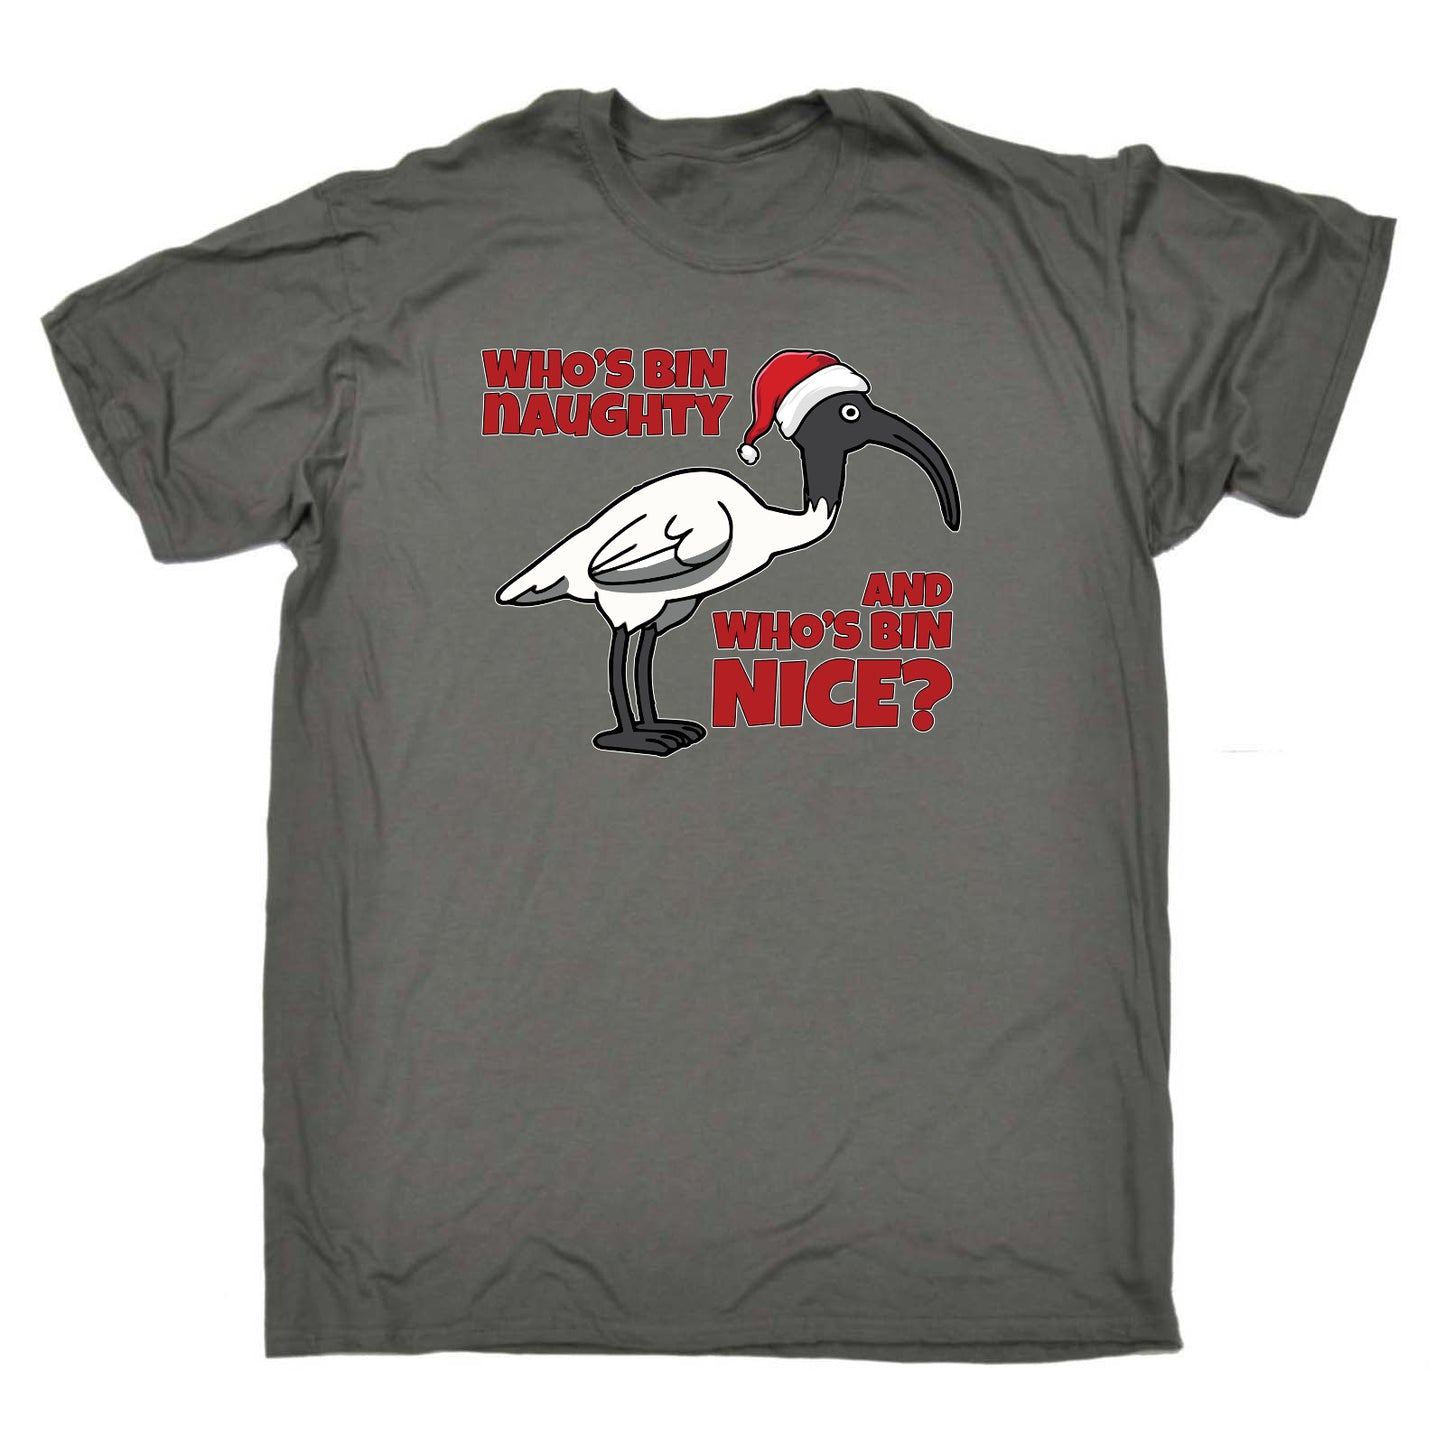 Whos Bin Chicken Naughty Nice Christmas Xmas - Mens Funny T-Shirt Tshirts